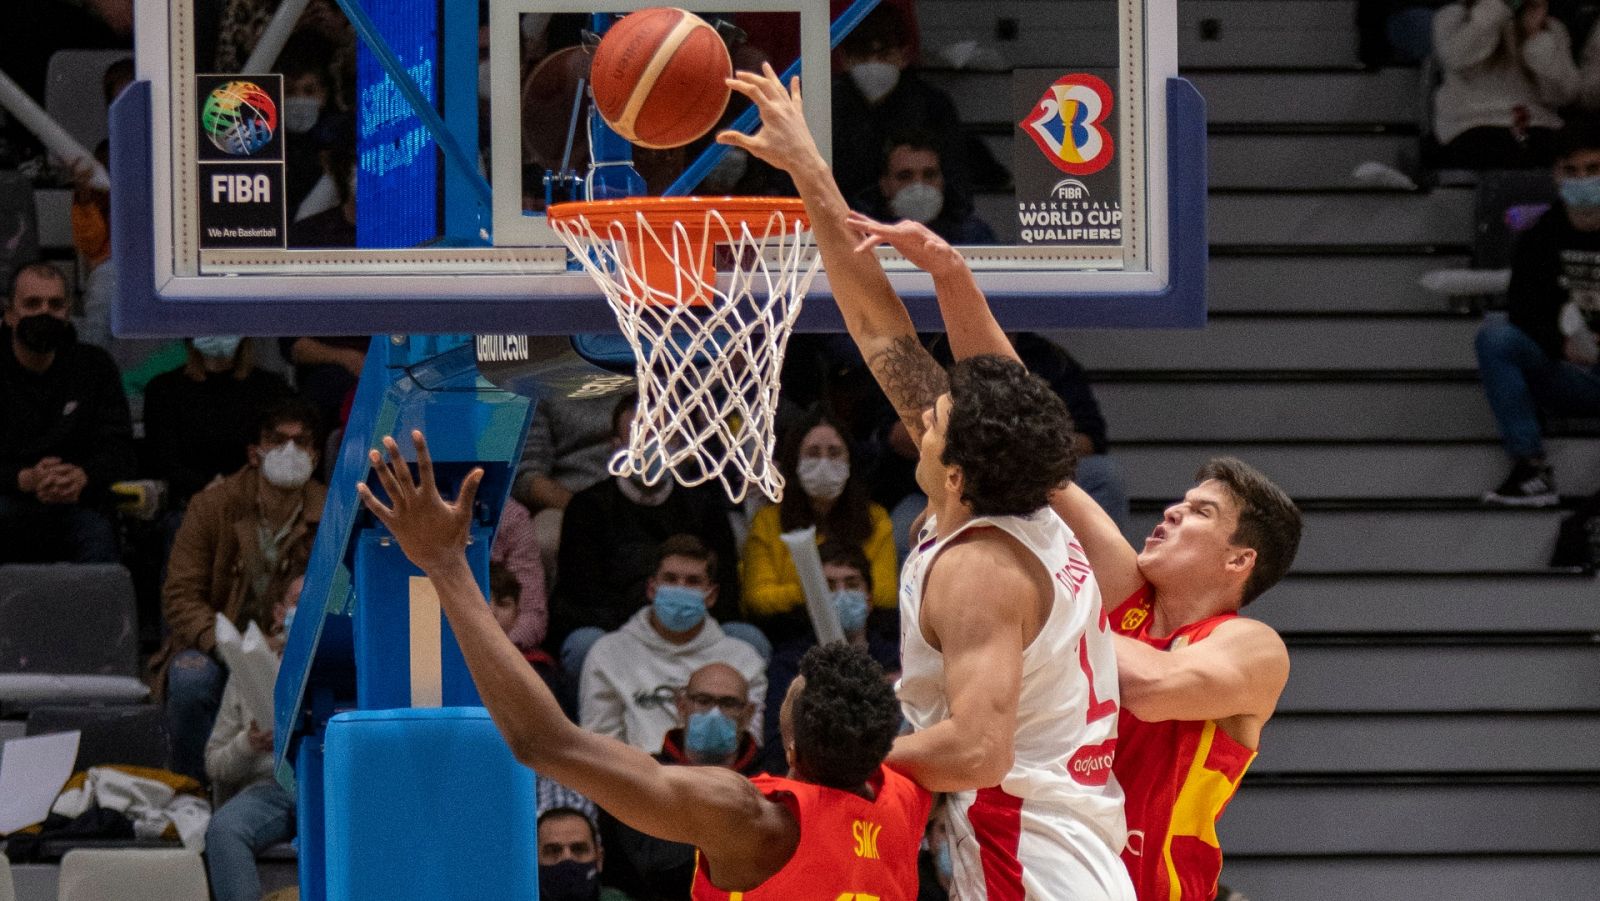 Baloncesto - Clasificación Campeonato del Mundo masculino 2023: España - Georgia